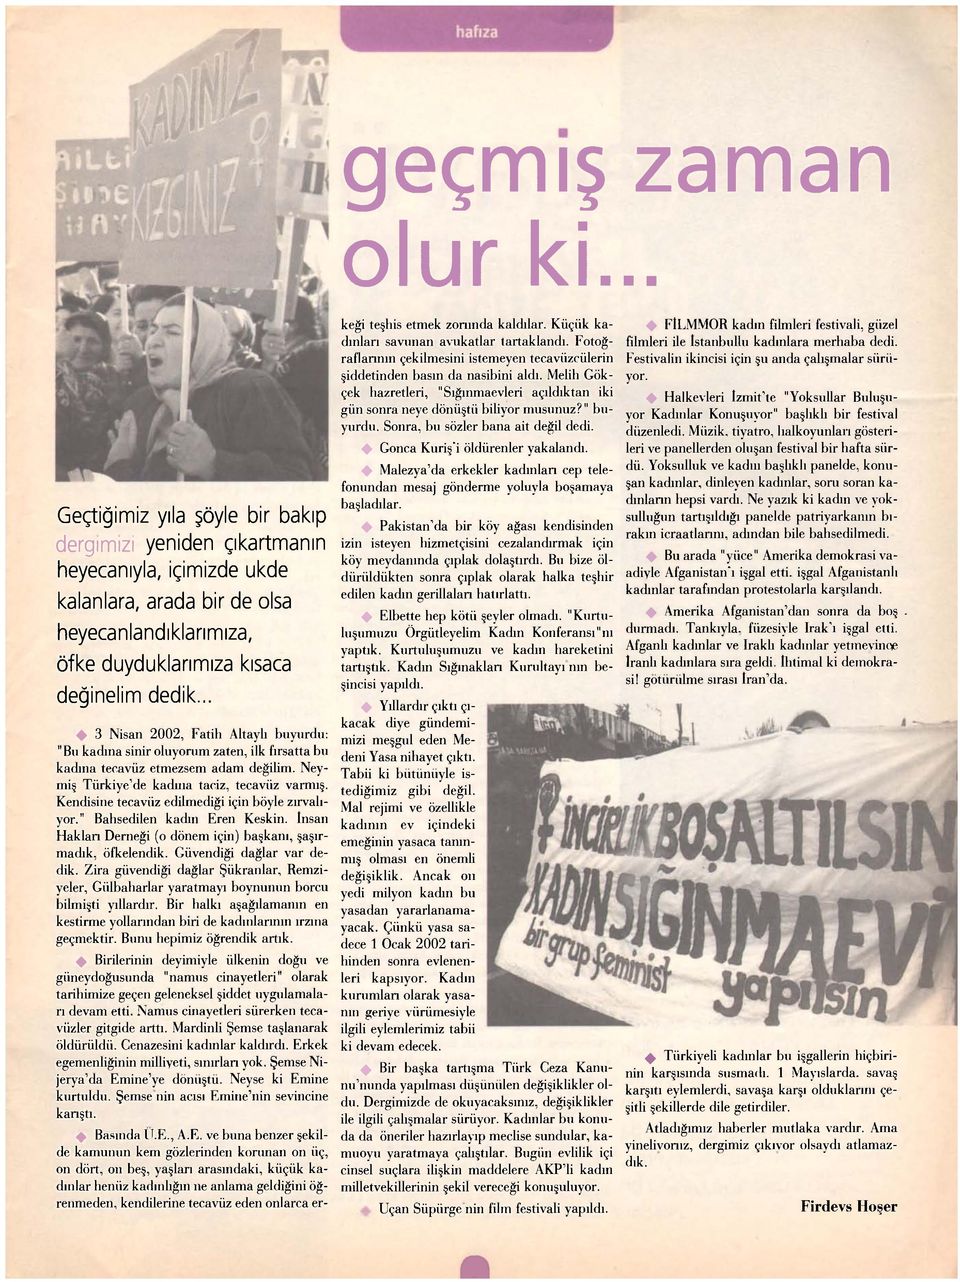 .. + 3 Nisan 2002, Fatih Altaylı buyurdu: "Bu kadına sinir oluyorum zaten, ilk fırsatta bu kadına tecavüz etmezsem adam değilim. Neymiş Türkiye'de kaduıa taciz, tecavüz varmış.